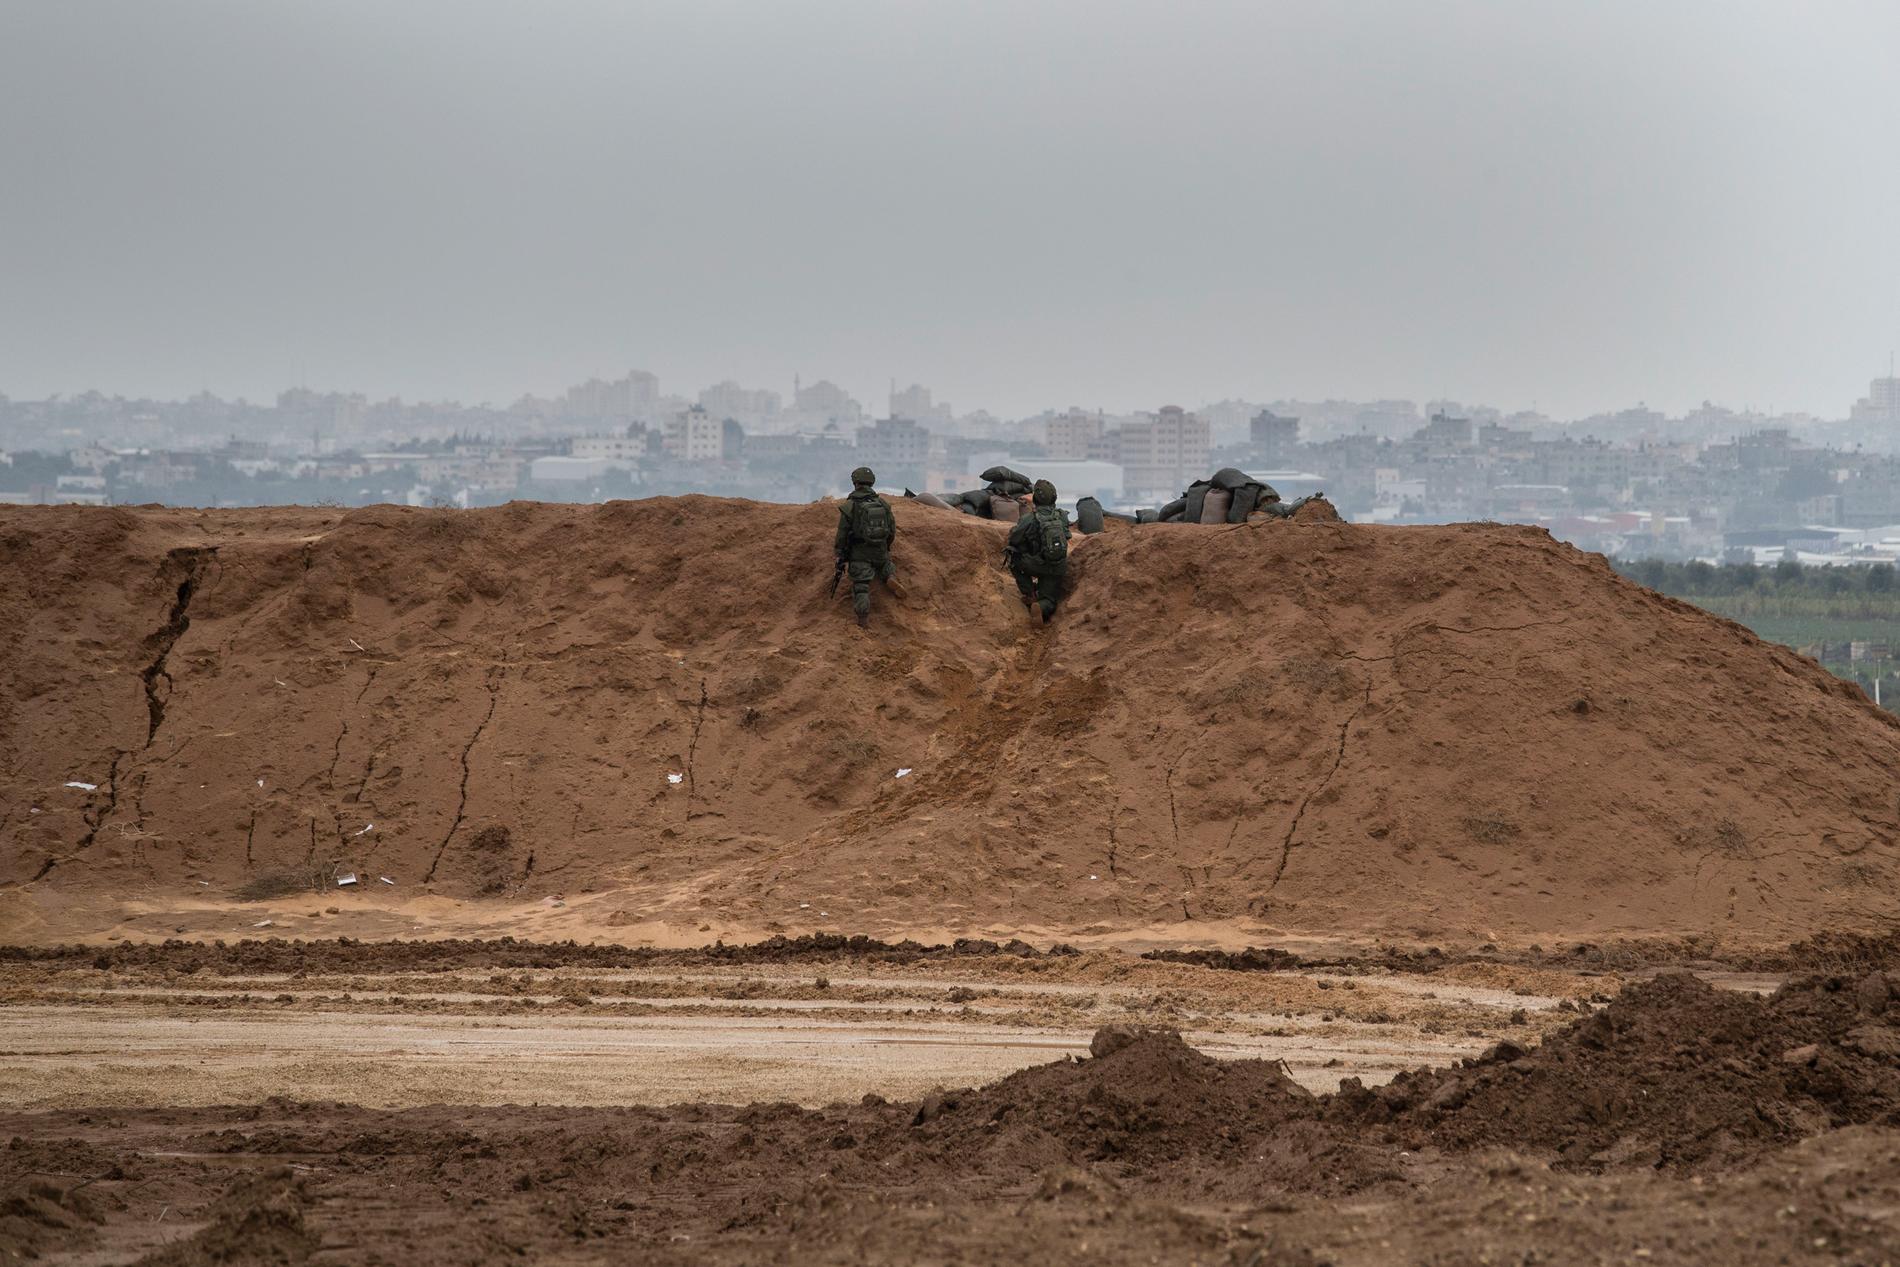 Israeliska soldater sköt ihjäl en man vid Gazastängslet, varpå raketer avfyrades mot israeliskt territorium. Arkivbild på soldater stationerade vid stängslet, tagen i ett annat sammanhang.